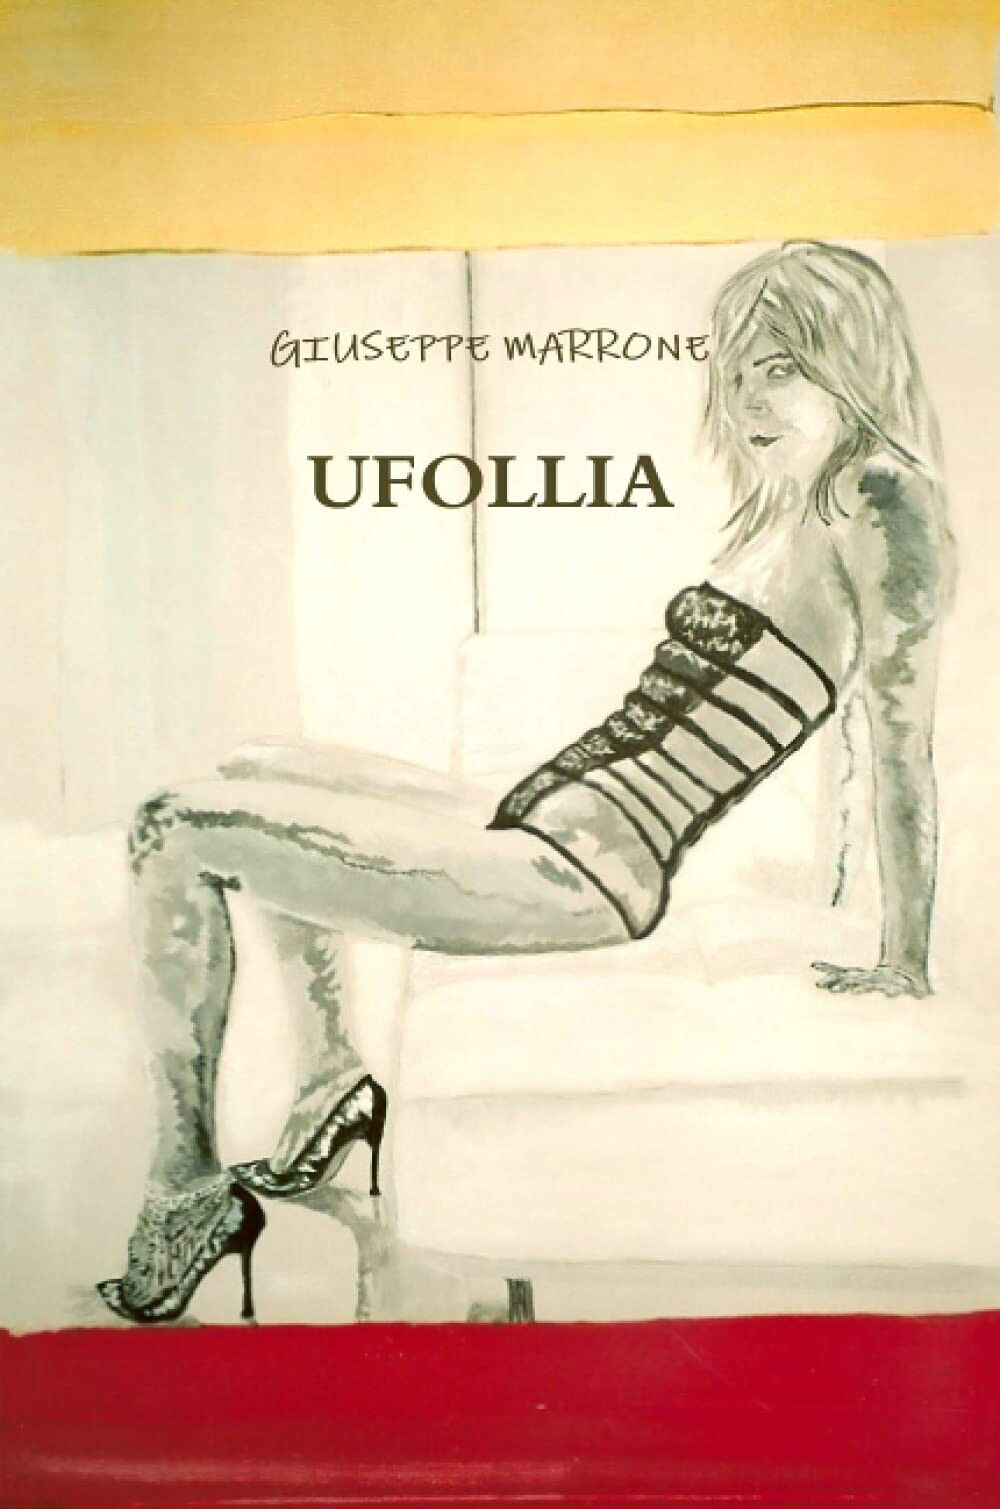 UFOLLIA - GIUSEPPE MARRONE - Lulu.com, 2009